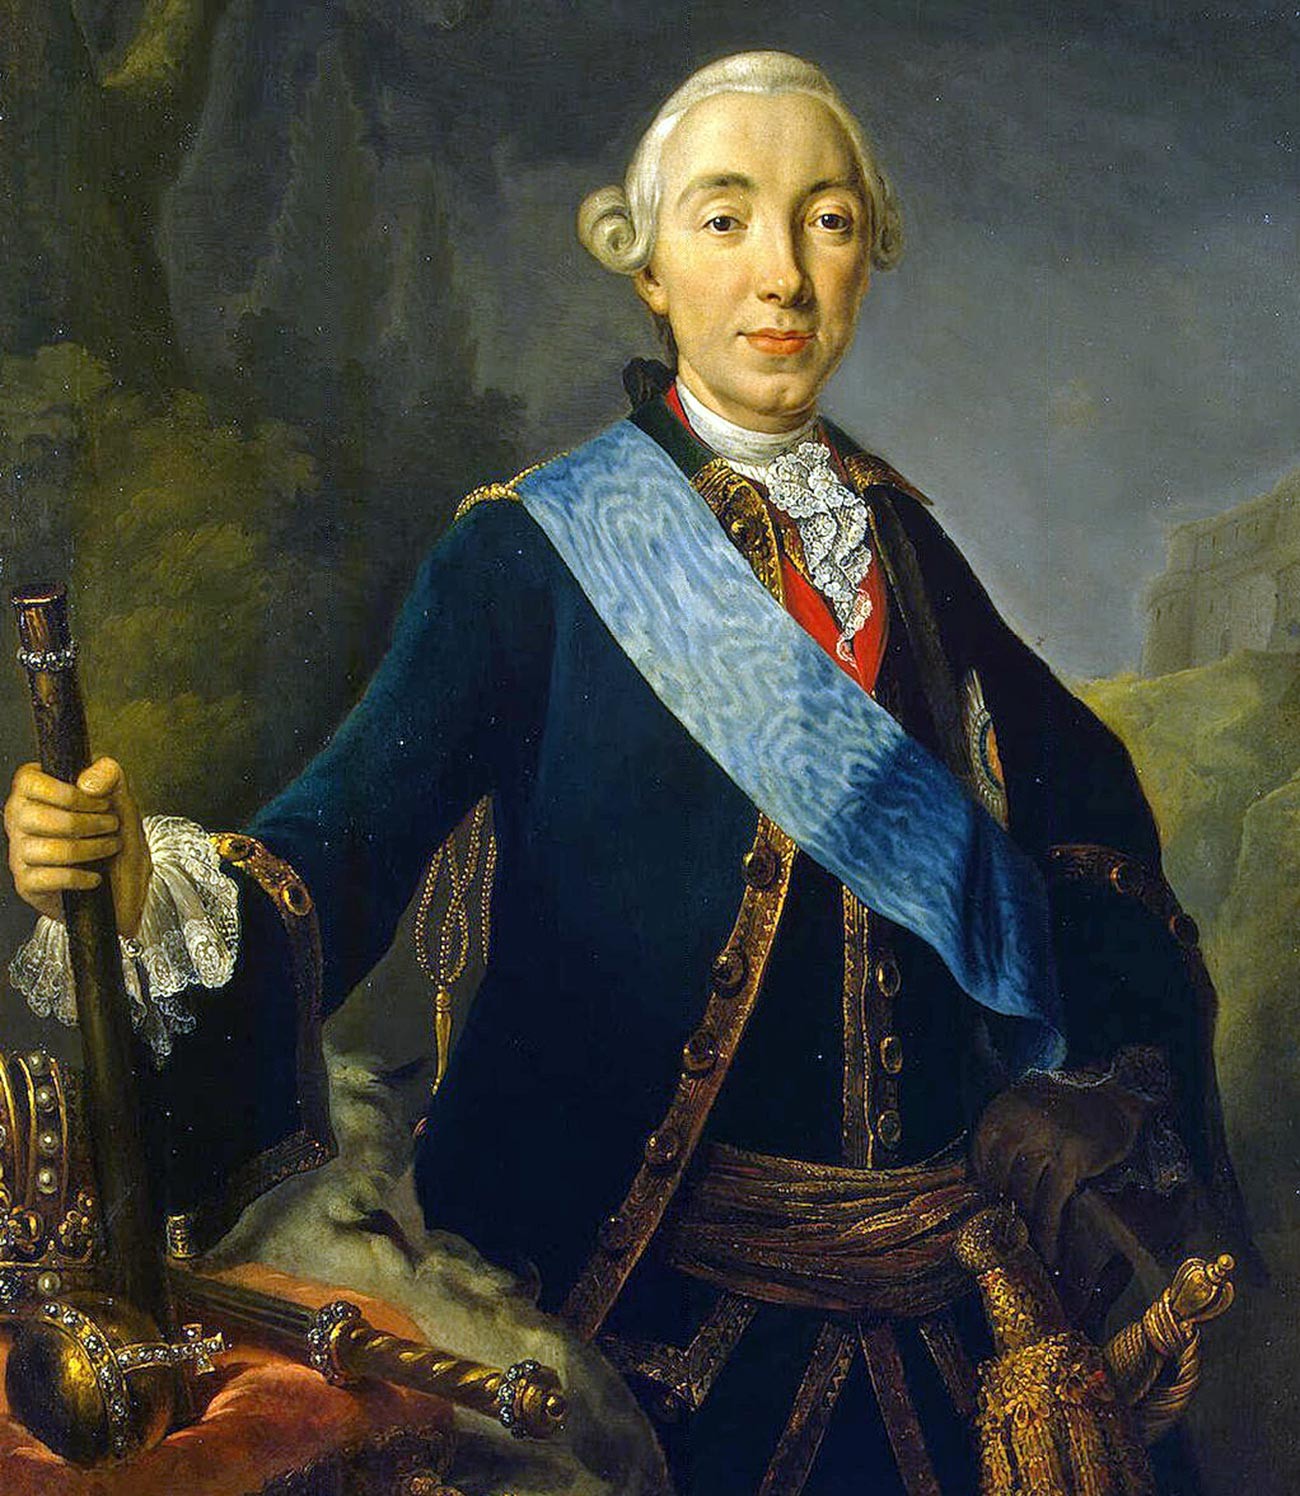 Pierre III né Karl Peter Ulrich de Holstein-Gottorp 